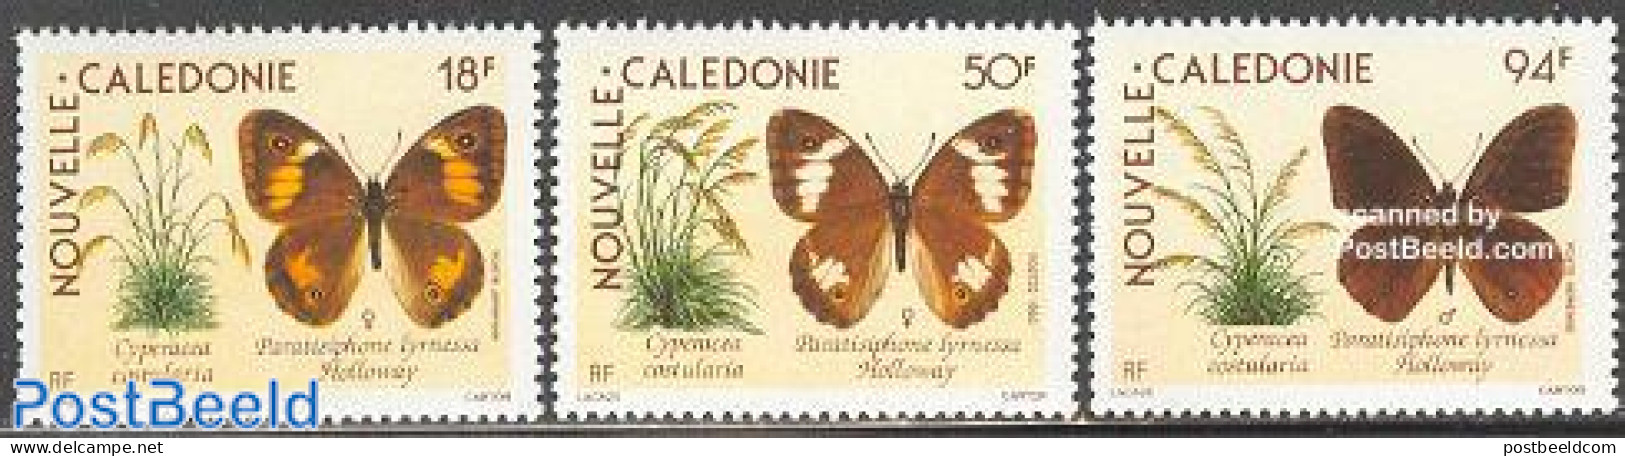 New Caledonia 1990 Butterflies 3v, Mint NH, Nature - Butterflies - Ongebruikt